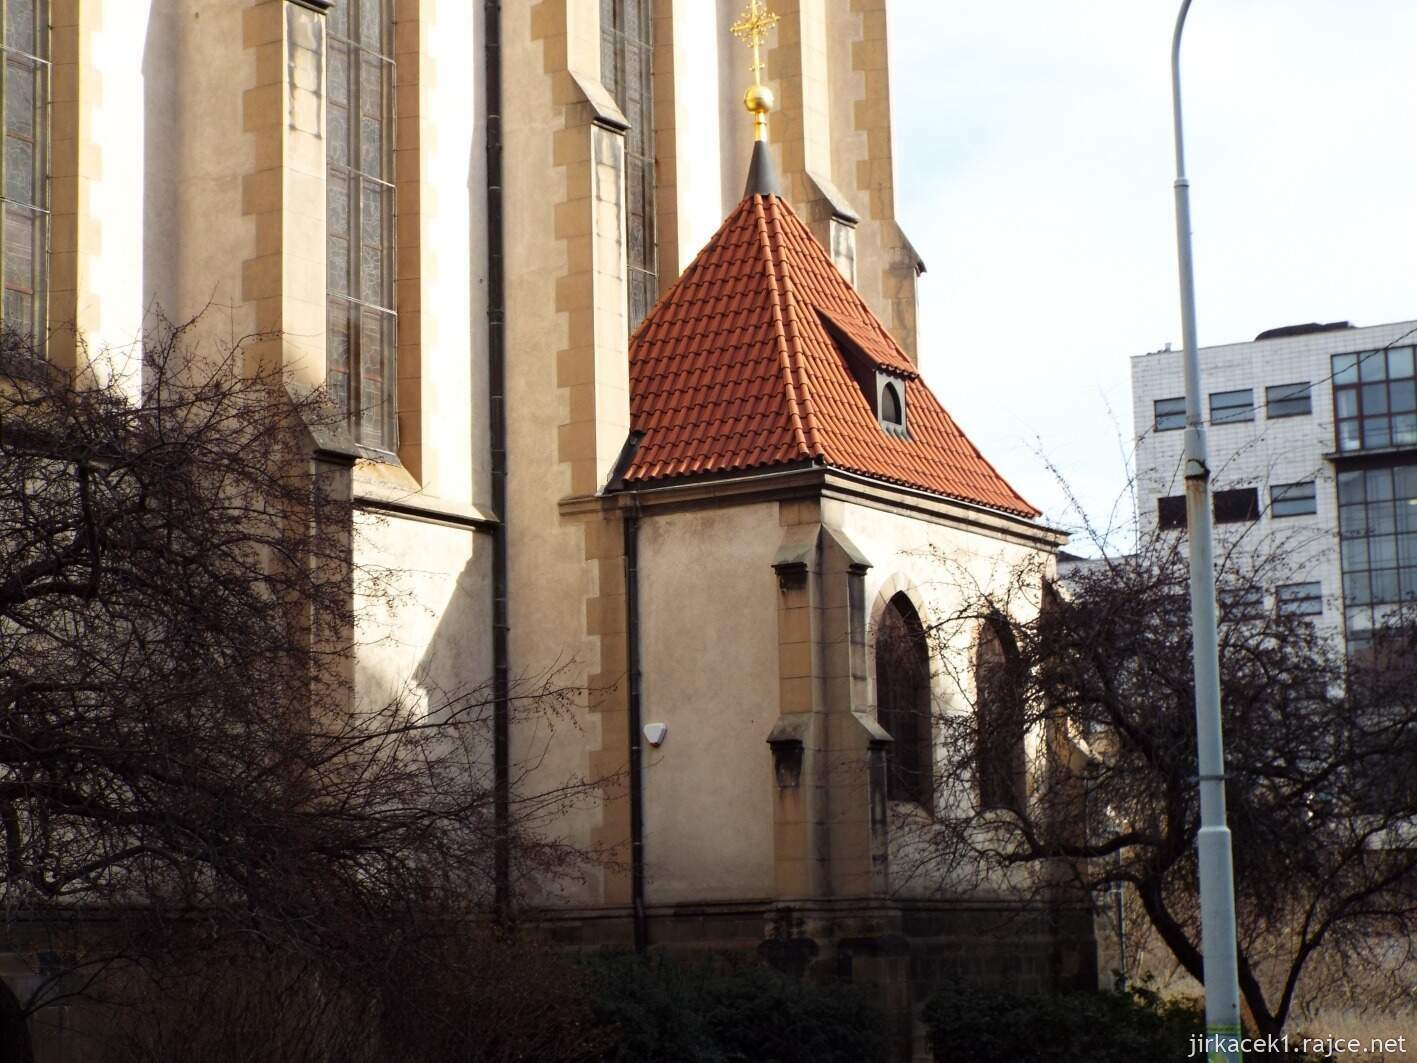 B - Praha Holešovice - kostel sv. Antonína Paduánského 11